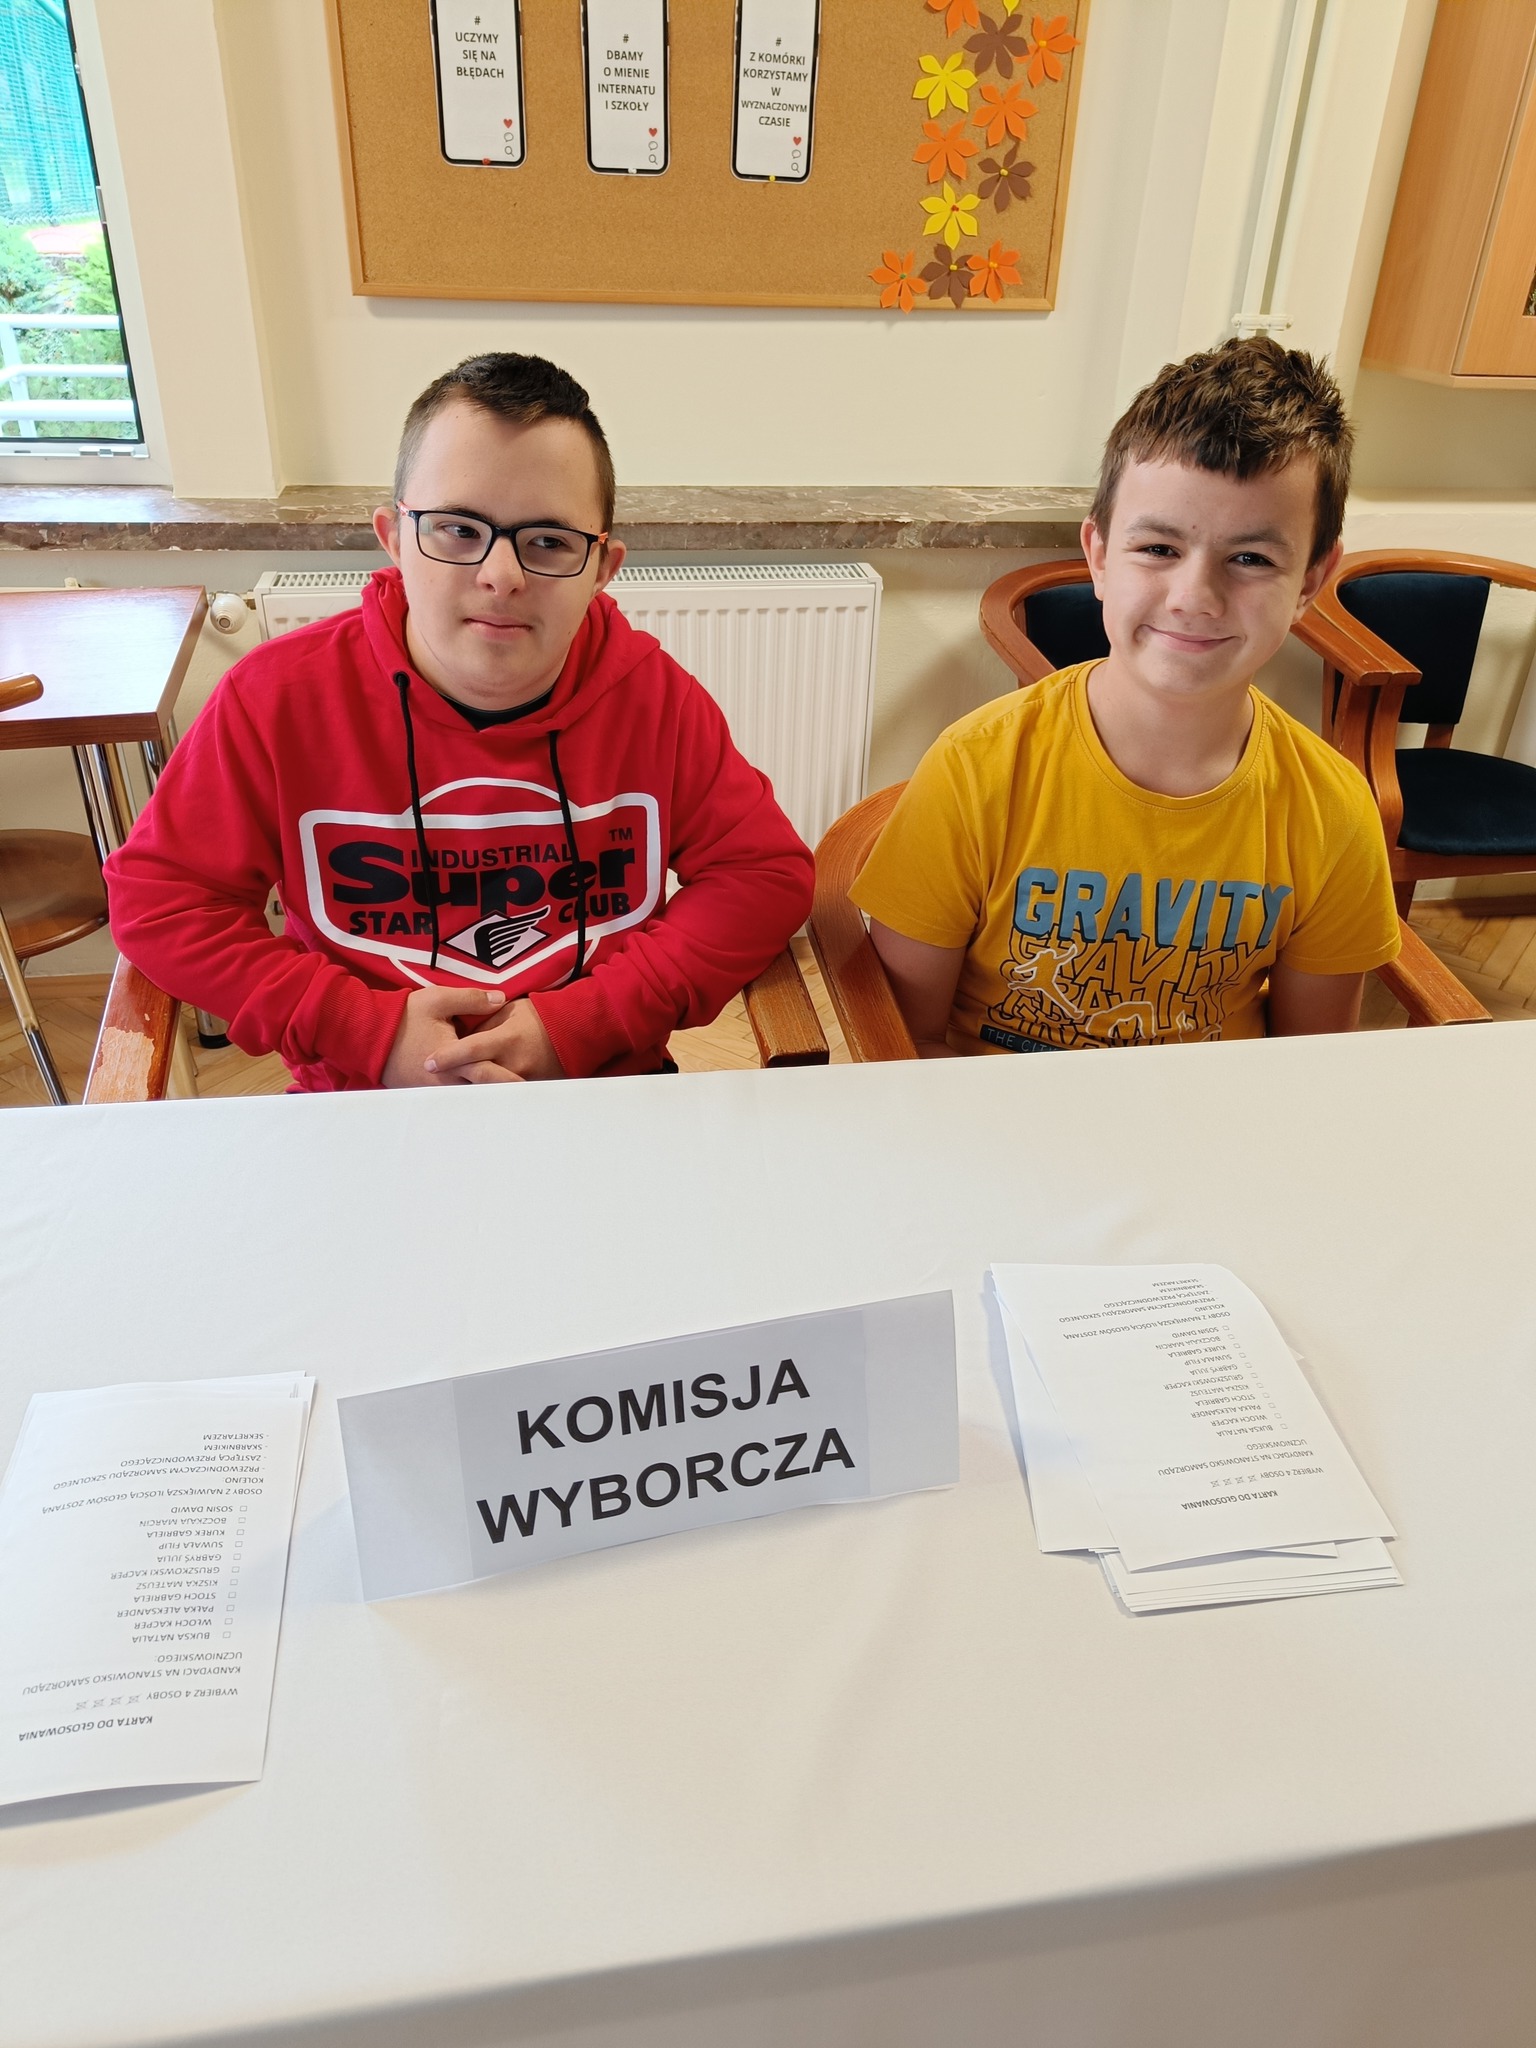 Na zdjęciu znajduje się dwóch chłopców siedzących przy stole. Na stole widnieje napis komisja wyborcza.